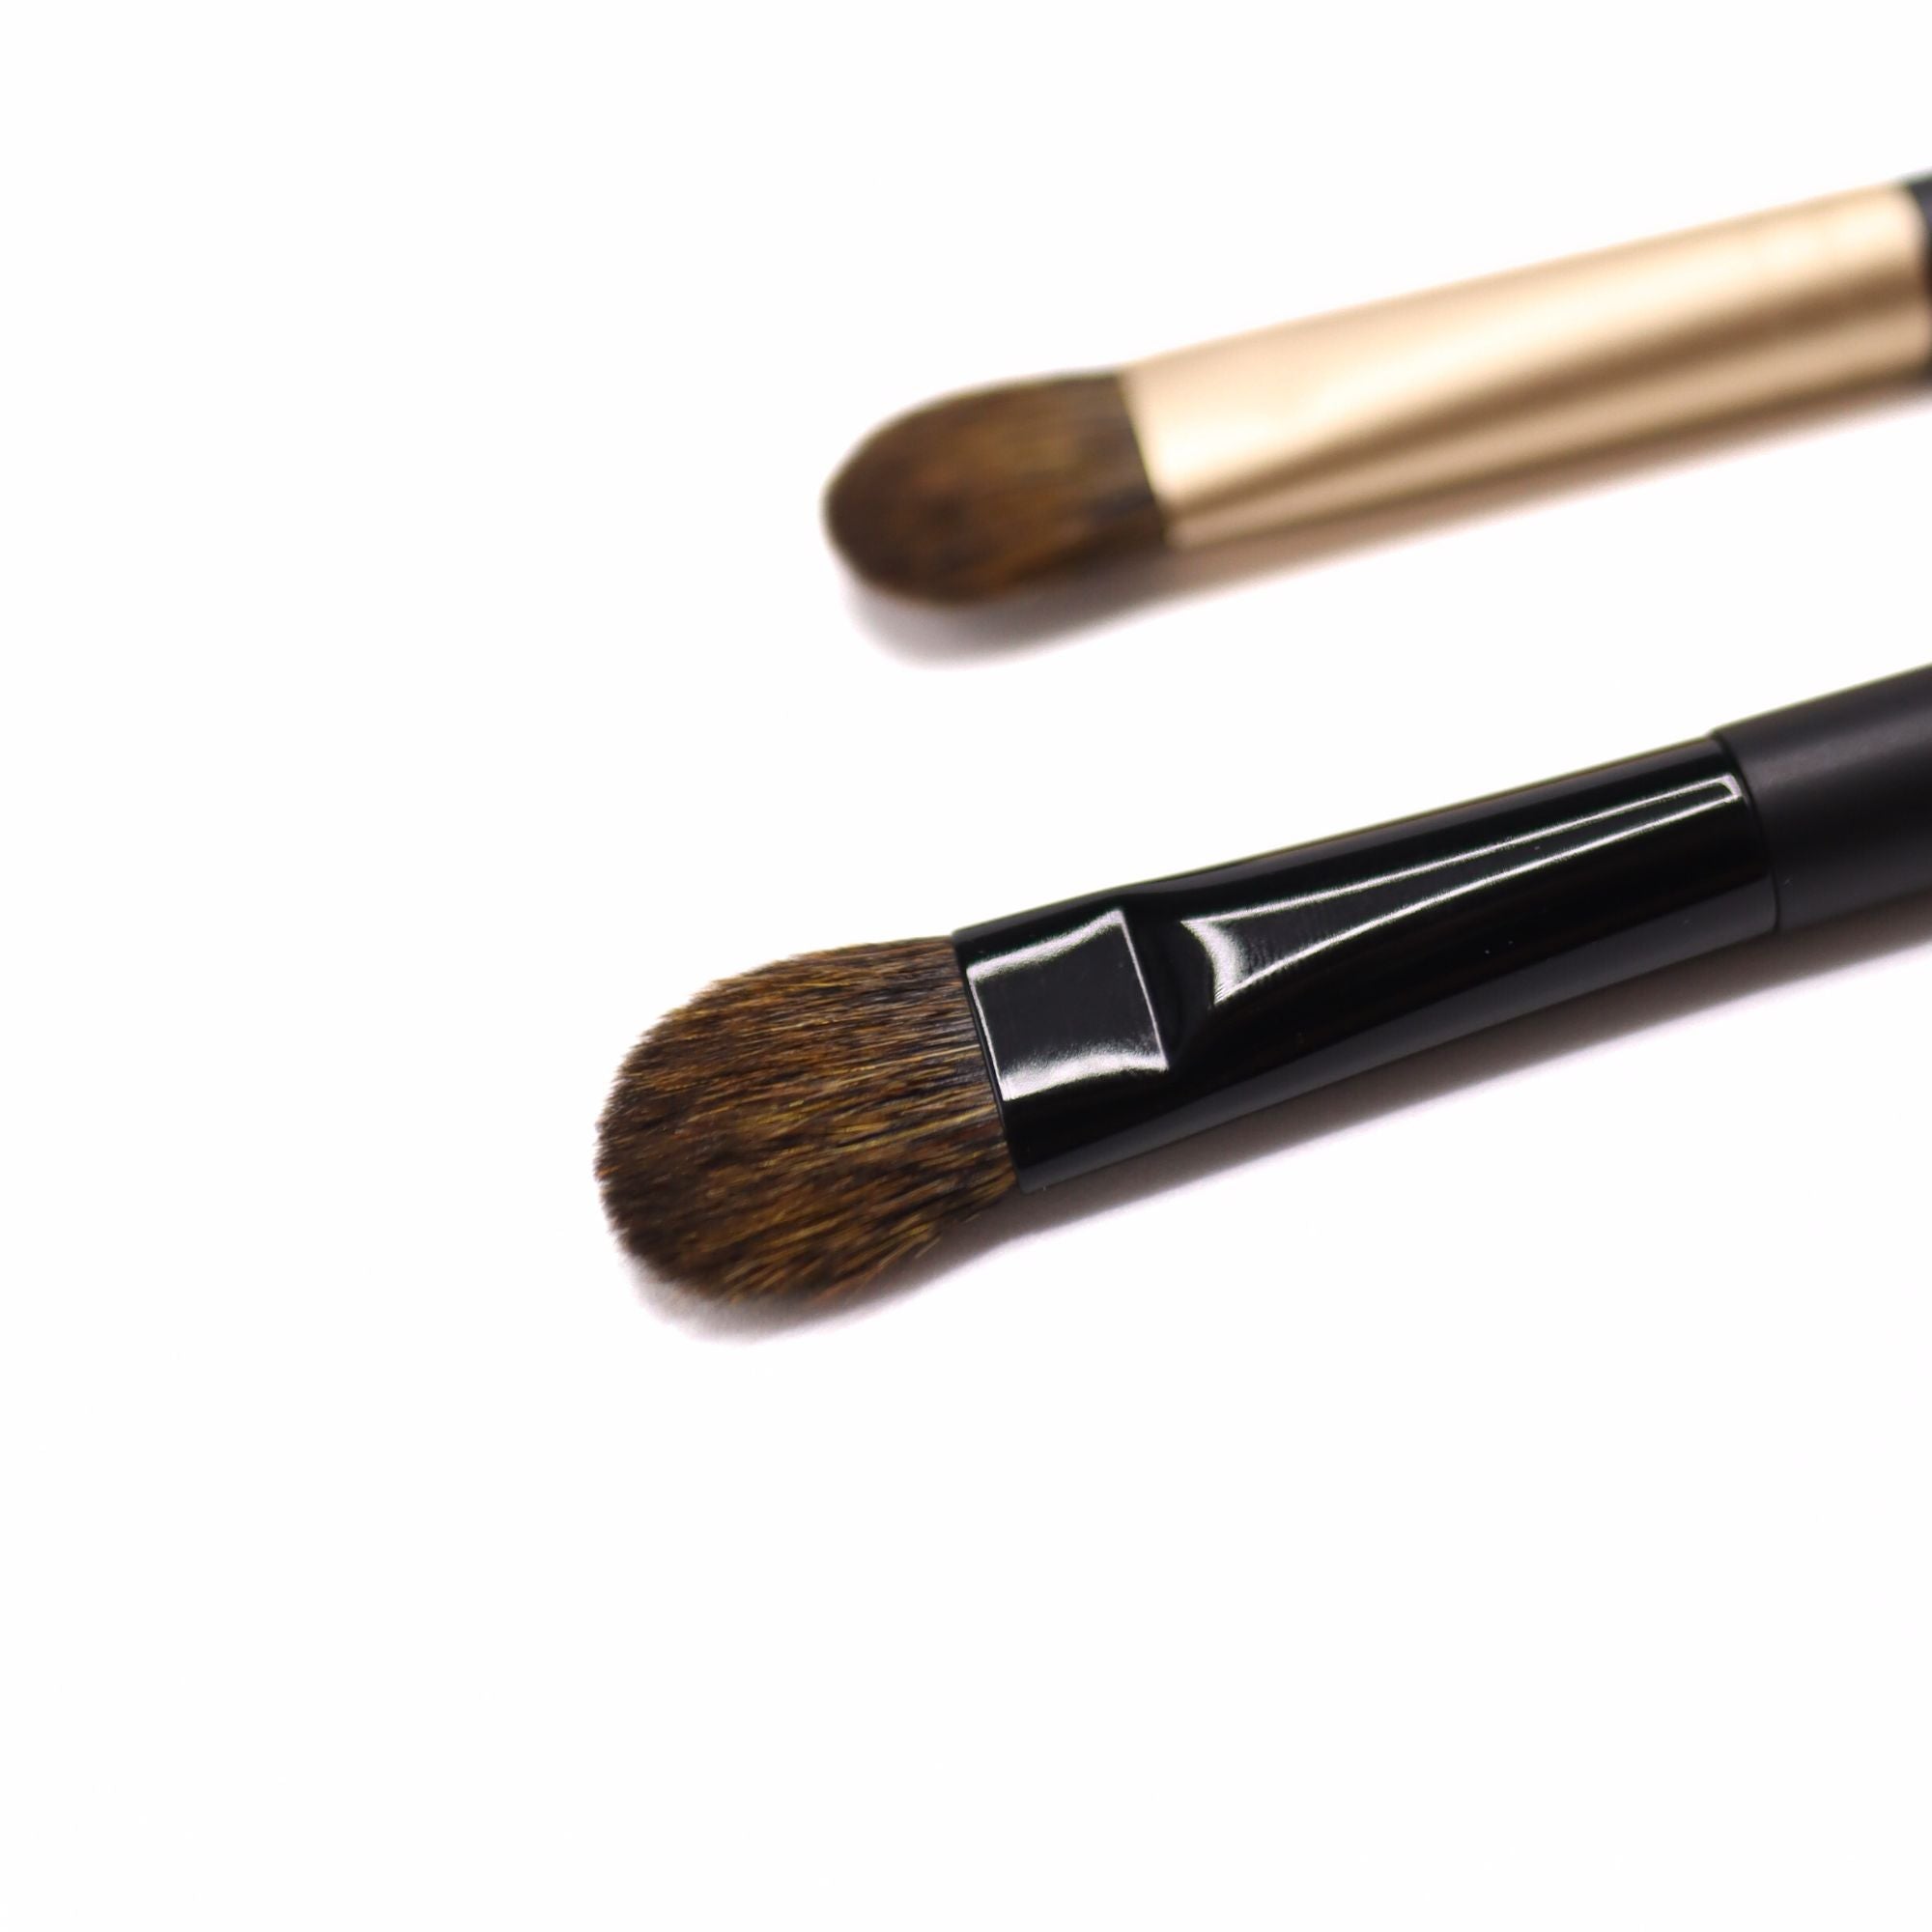 Koyudo Medium Eyeshadow Brushes (PS-M) - Fude Beauty, Japanese Makeup Brushes